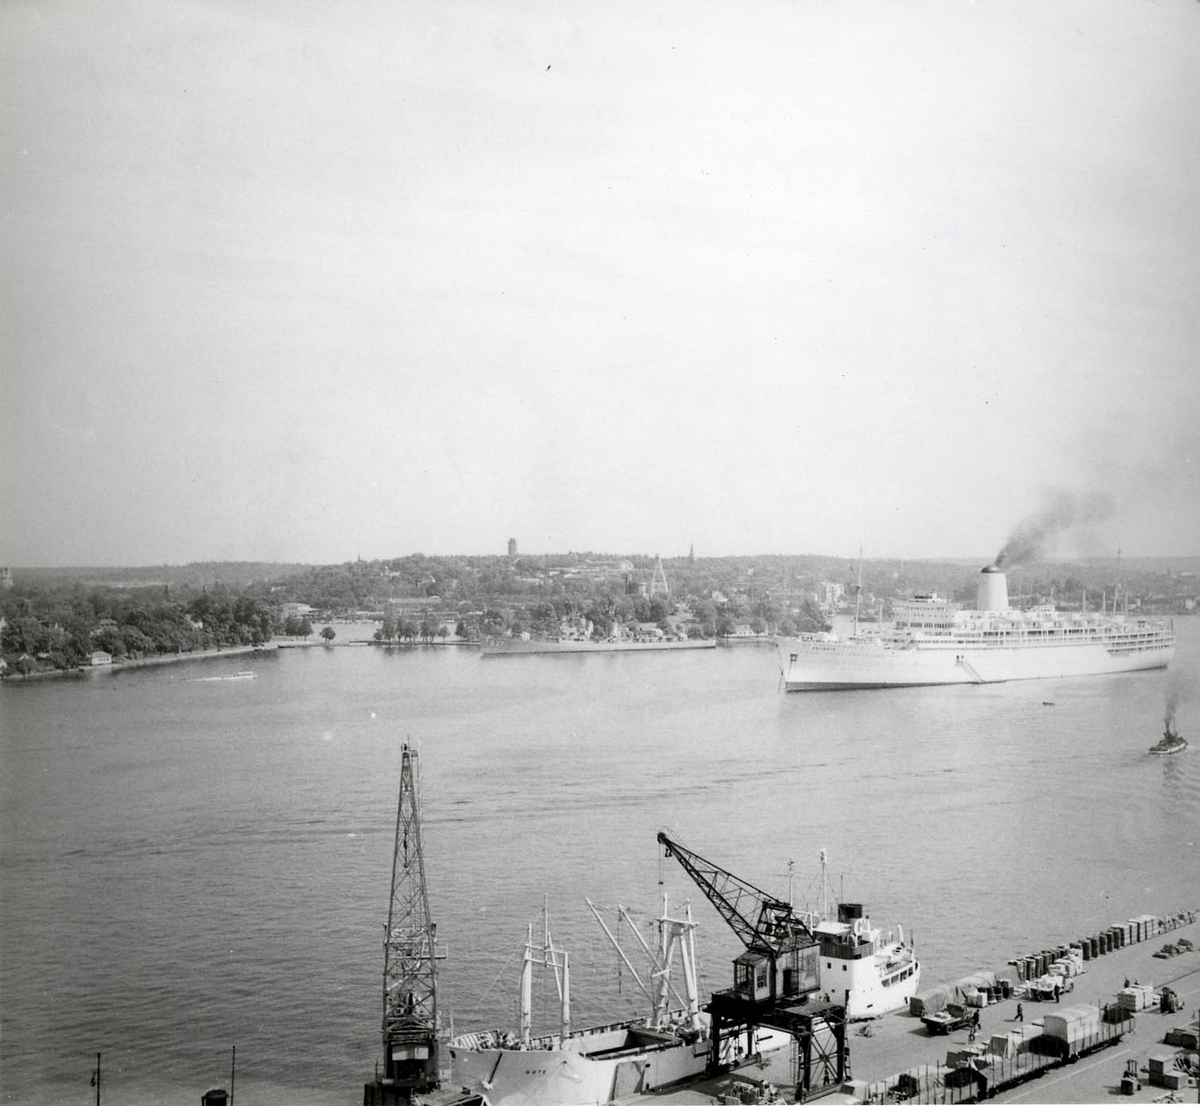 Foto från 1957 visande jagare 937 "Davis" från USA, samt passagerarturbinångfartyg "Arcadia" av London, m.fl. fartyg på Stockholms ström.